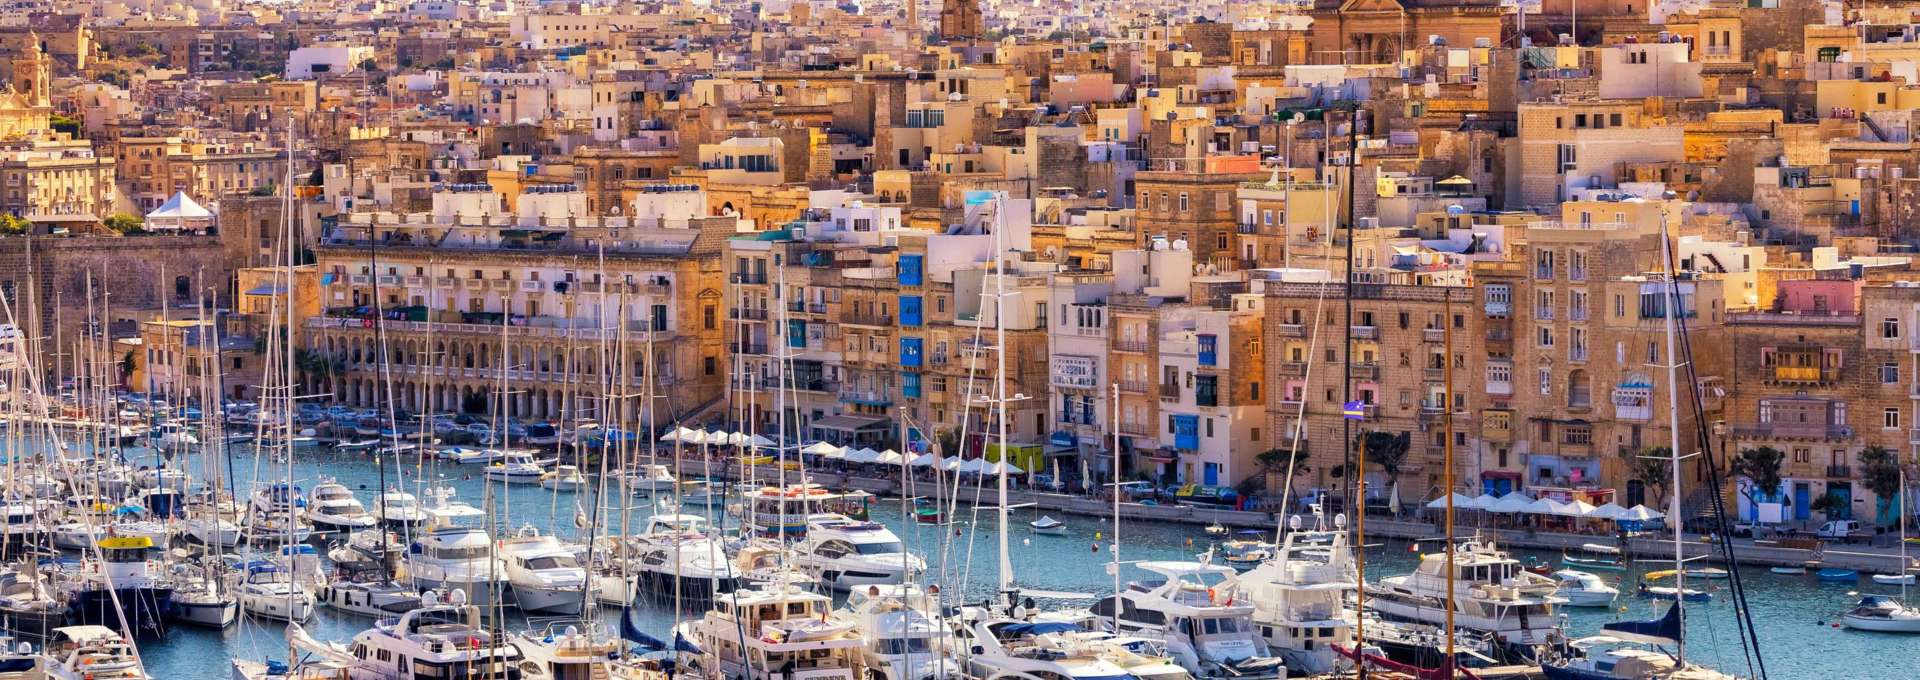 Malta tres ciudades